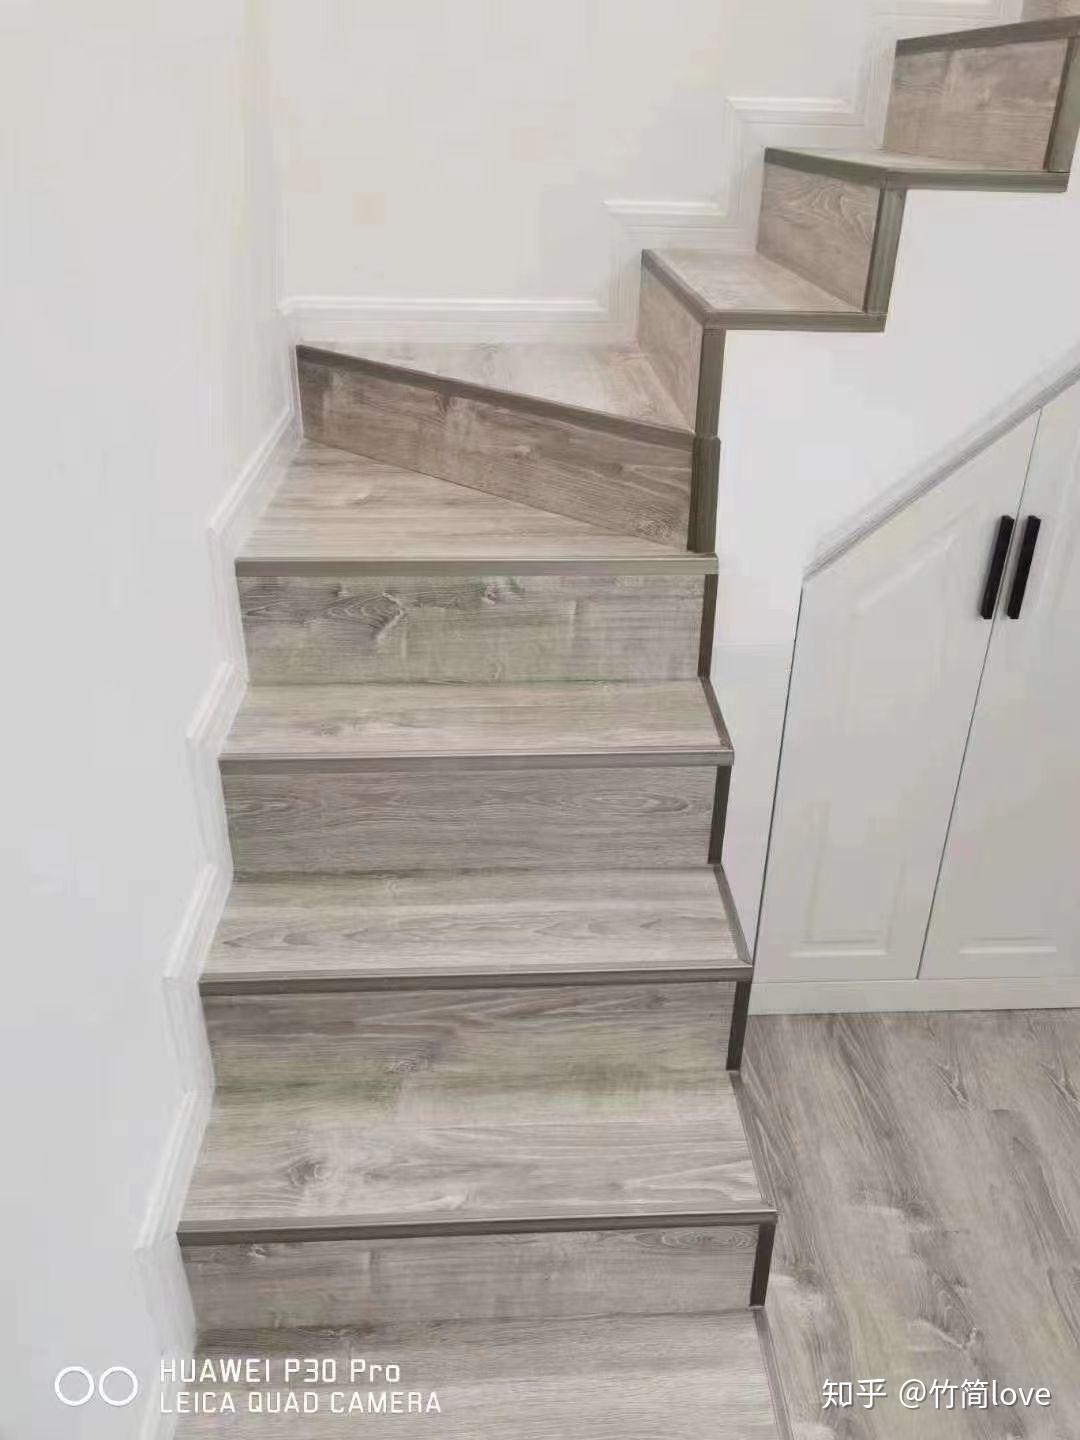 楼梯效果 优点:性价比高,如果地面铺地板还可以做到颜色统一 踏步需要